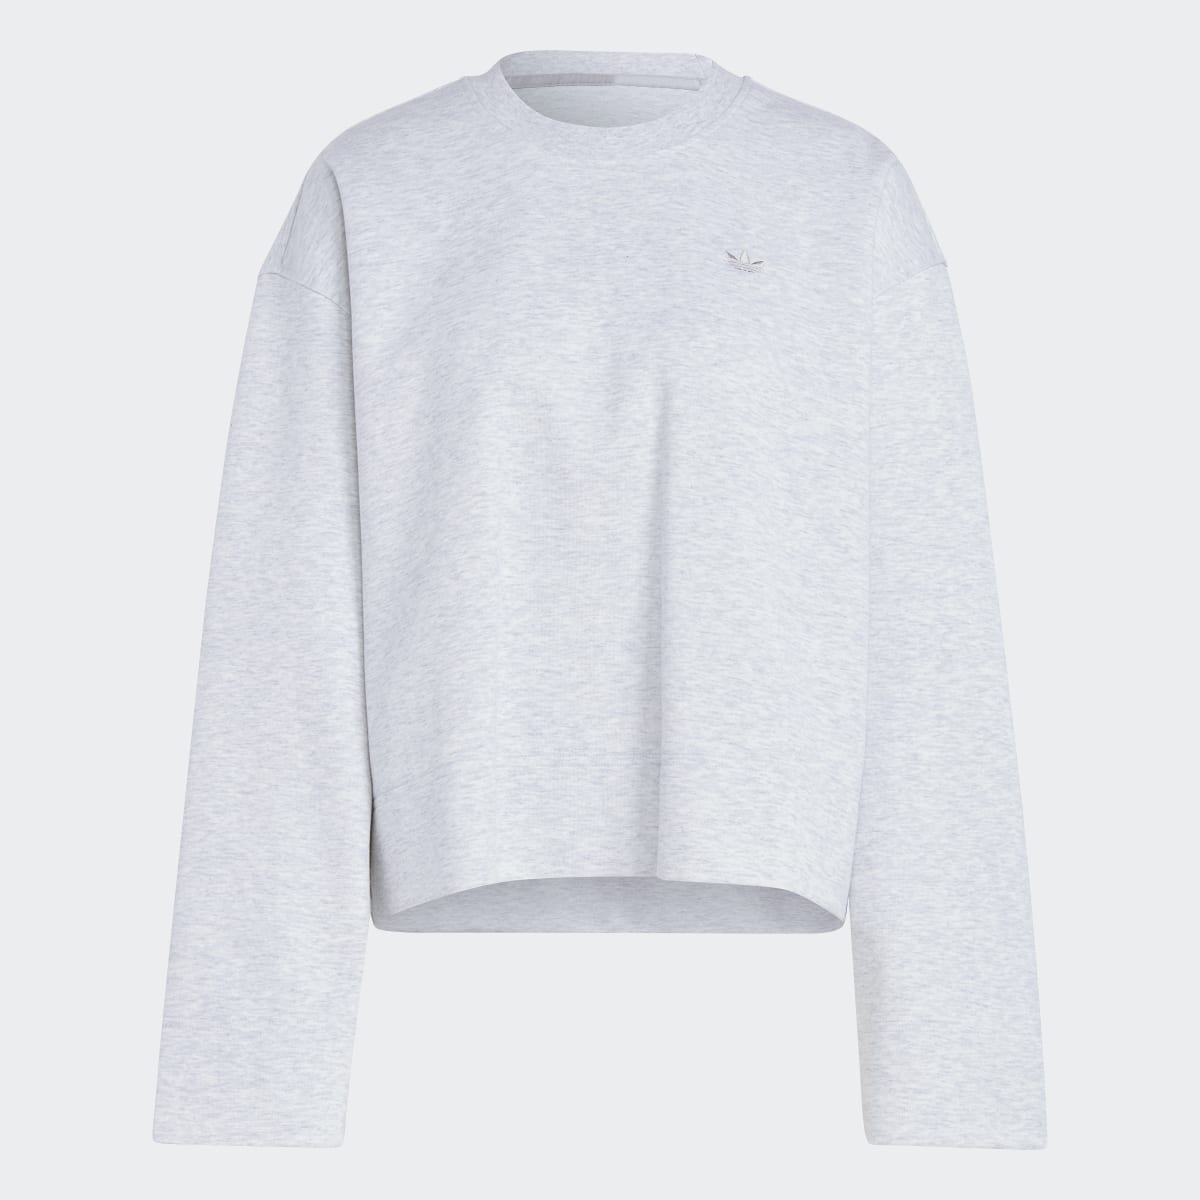 Adidas Premium Essentials Crew Sweater. 4